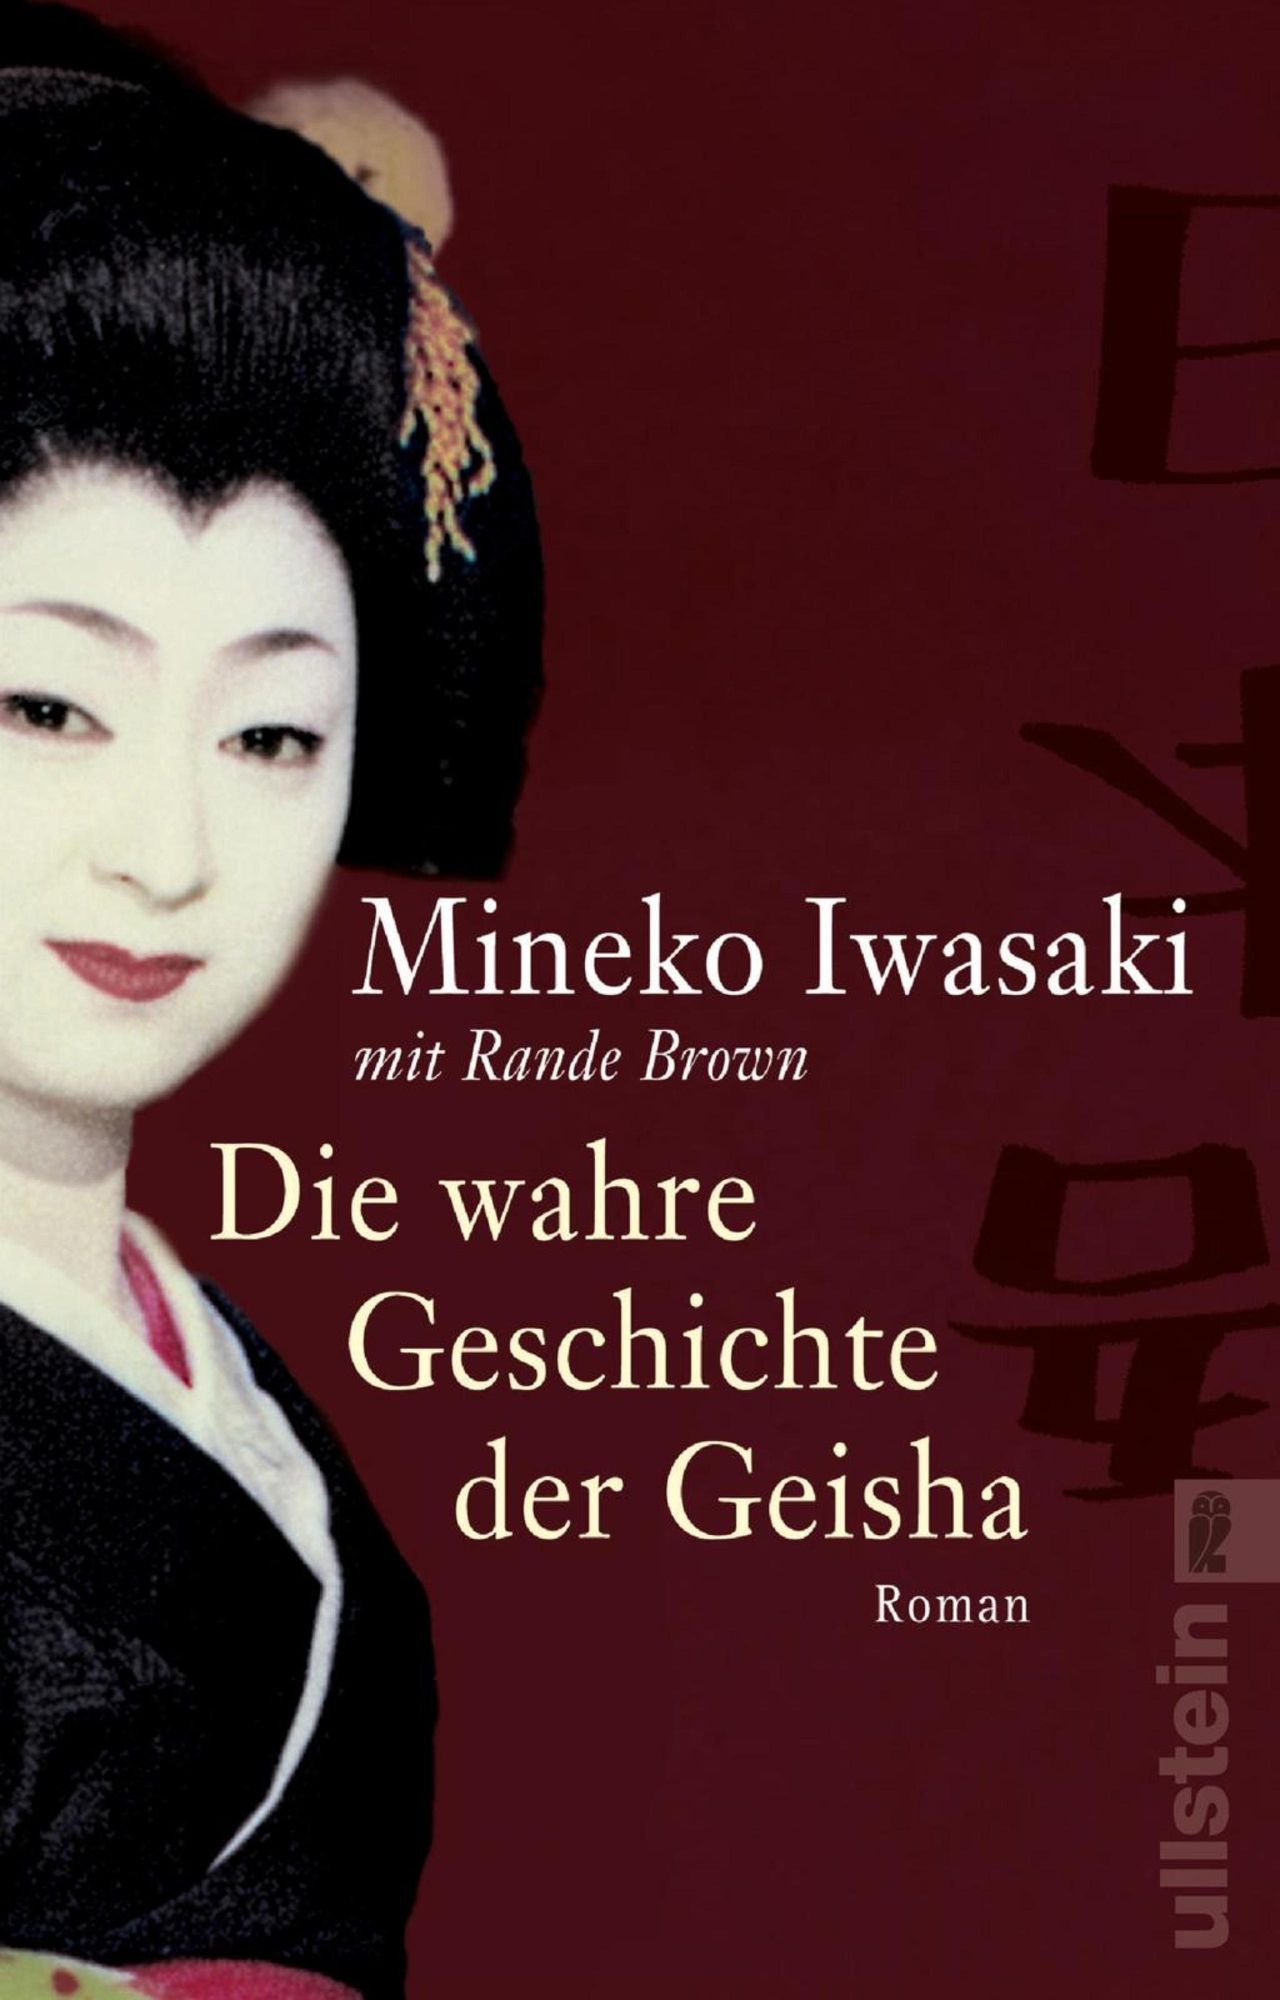 mineko iwasaki